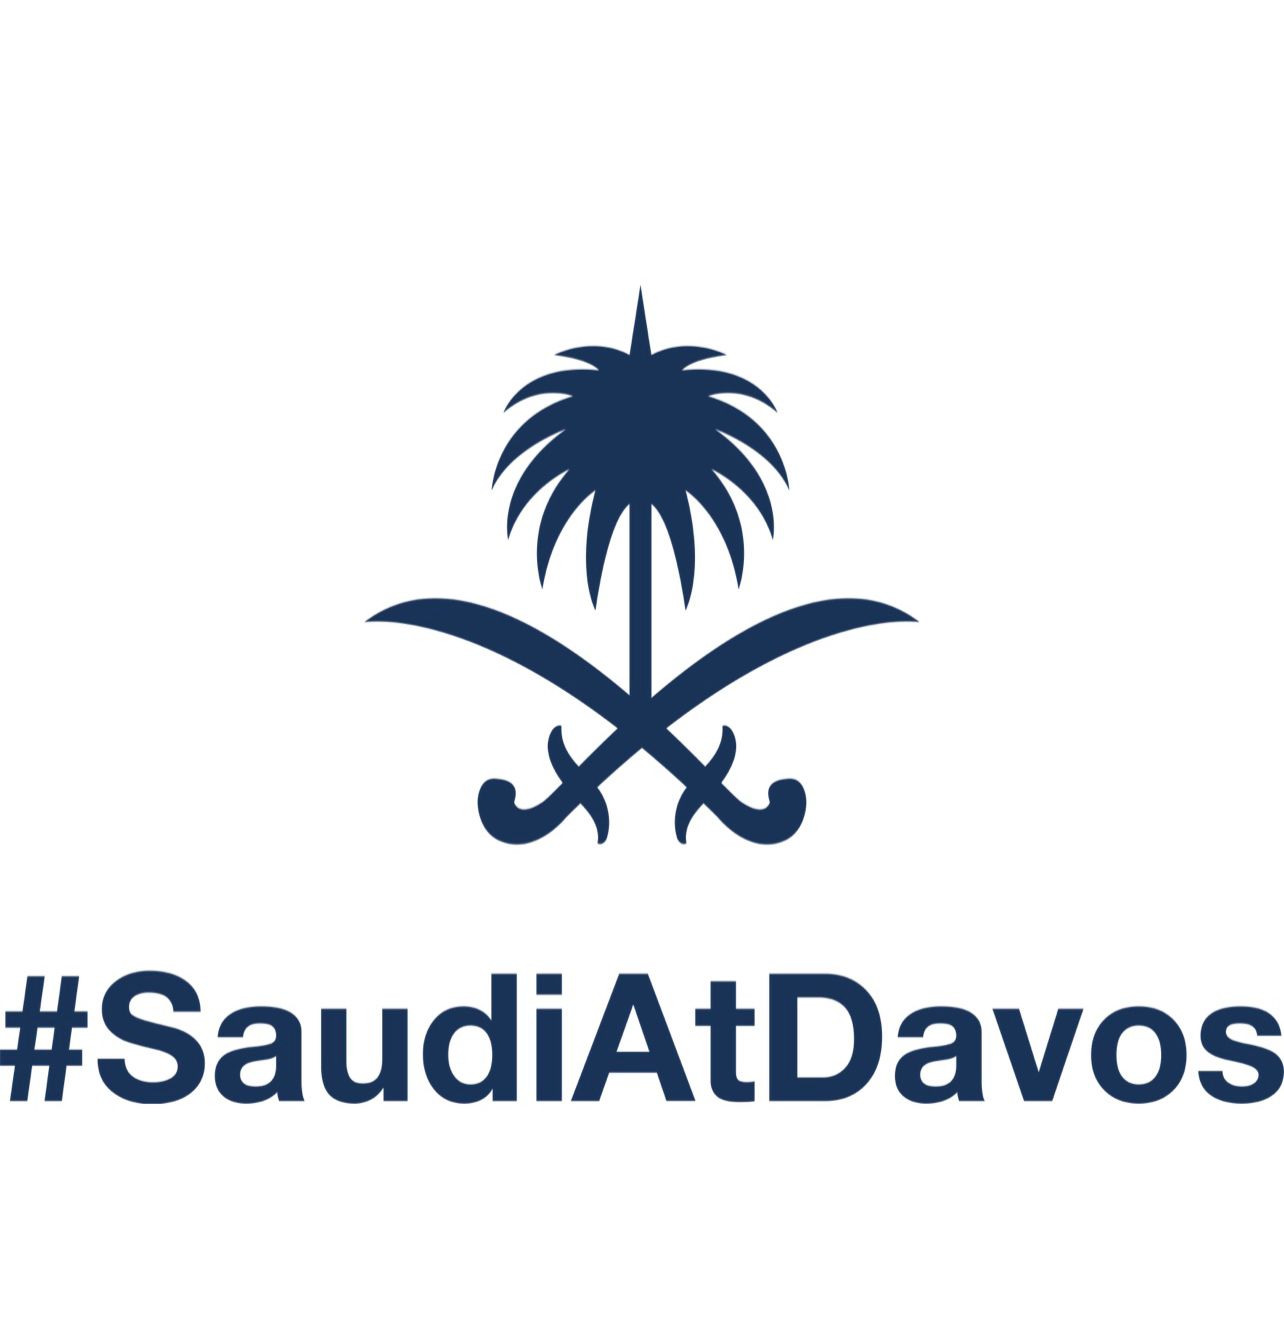 السعودية تؤكد على بناء جسور التفاهم العالمية وتعزيز العمل على التحوّل في مجال الطاقة والنمو الاقتصادي الشامل